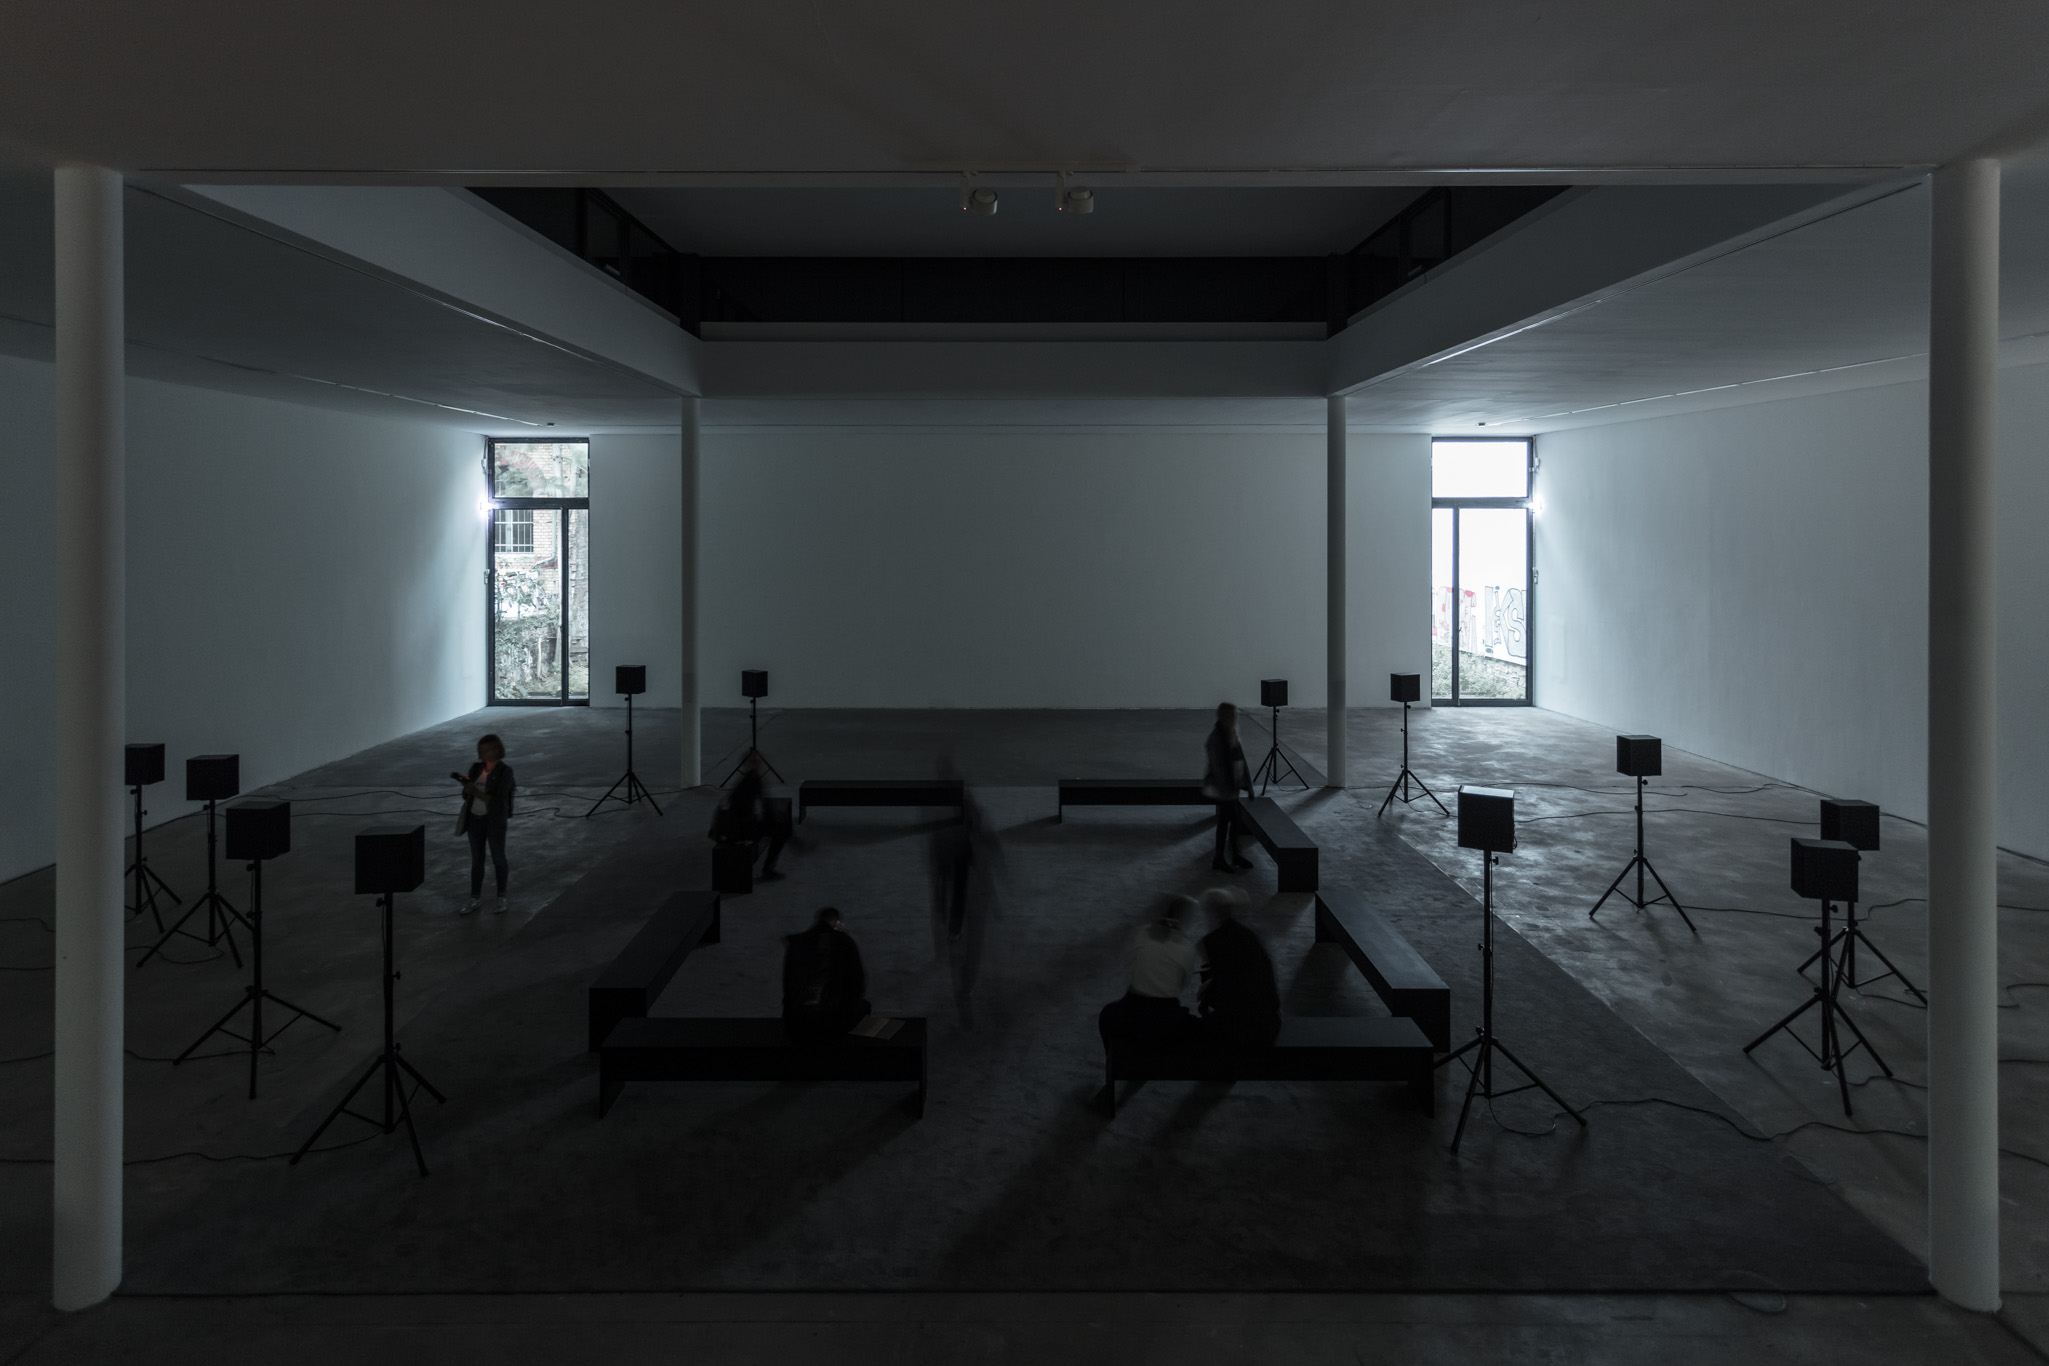 Willem de Rooij, Ilulissat, 2014, Digitale 12-Kanal-Tonaufzeichnung, Installationsansicht KW Institute for Contemporary Art, 2017, Foto: Frank Sperling